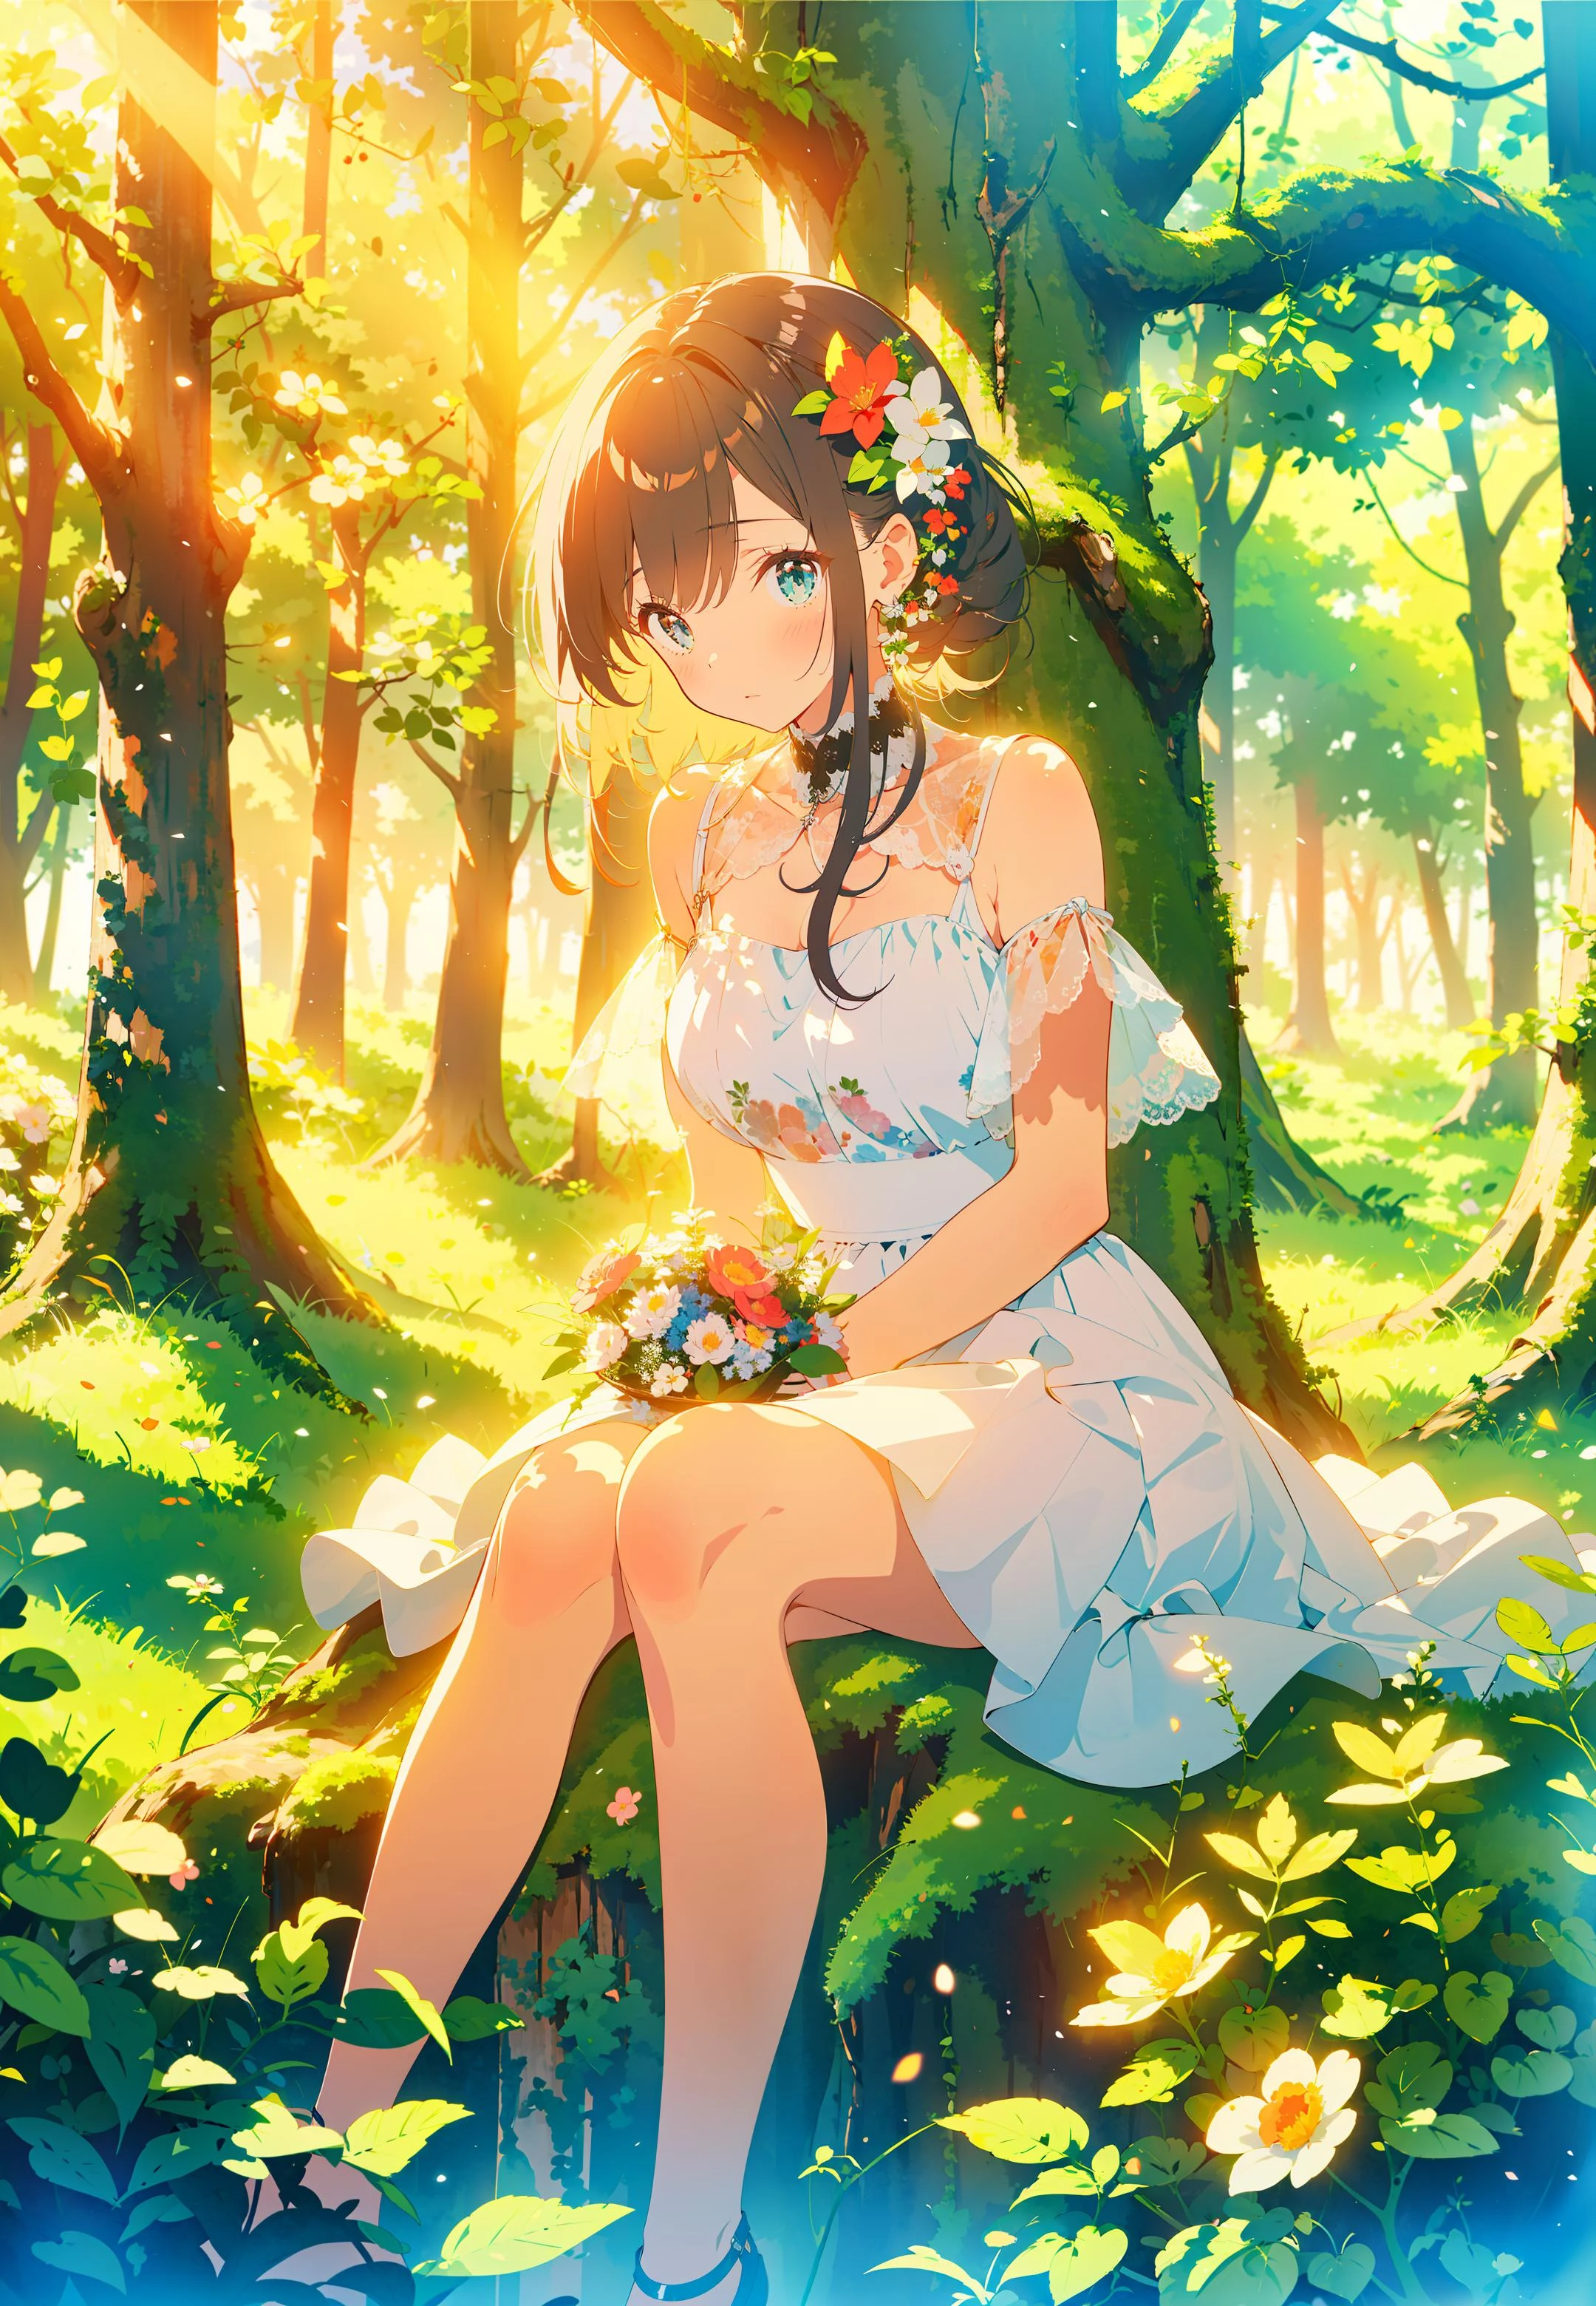 تحفة,أفضل جودة,¼ Œ 1 فتاة, يجلس على العشب, زهور, holding زهور, الإضاءة الدافئة, فستان أبيض, المقدمة ضبابية, (غابة:1.5)